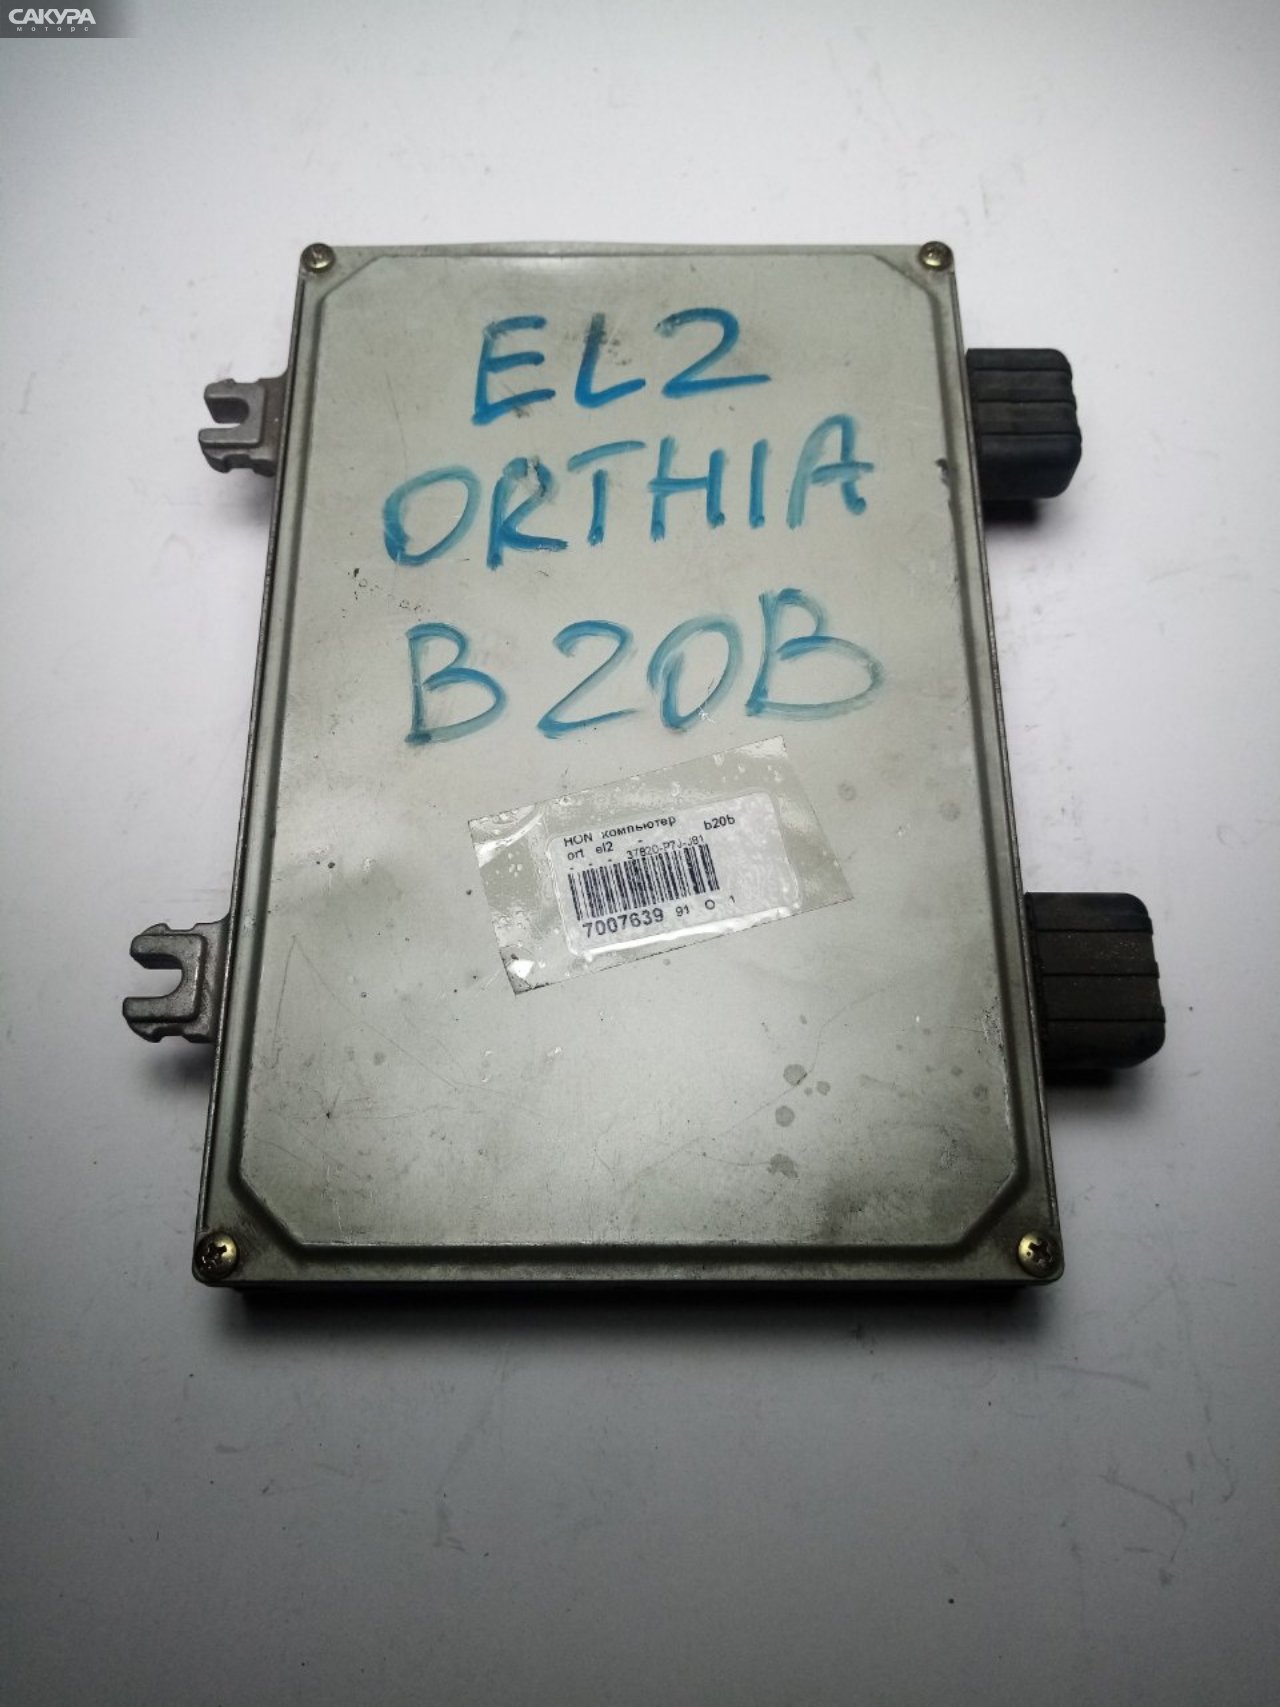 Блок управления ДВС Honda Orthia EL2 B20B: купить в Сакура Иркутск.